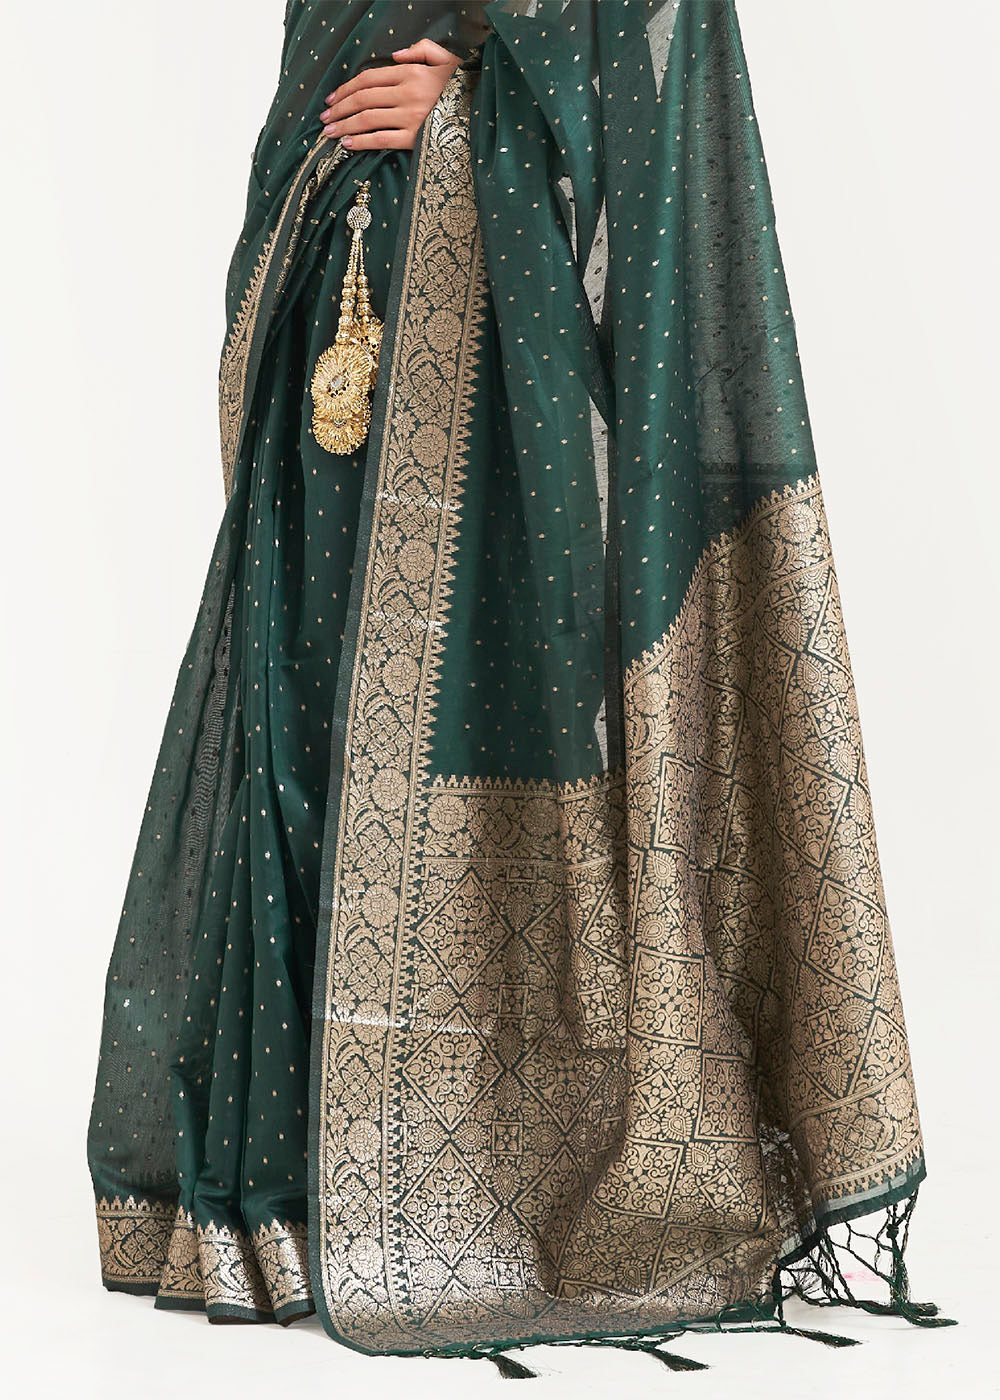 Castleton Green Woven Banarasi Silk Saree with overall Mukaish work - Colorful Saree